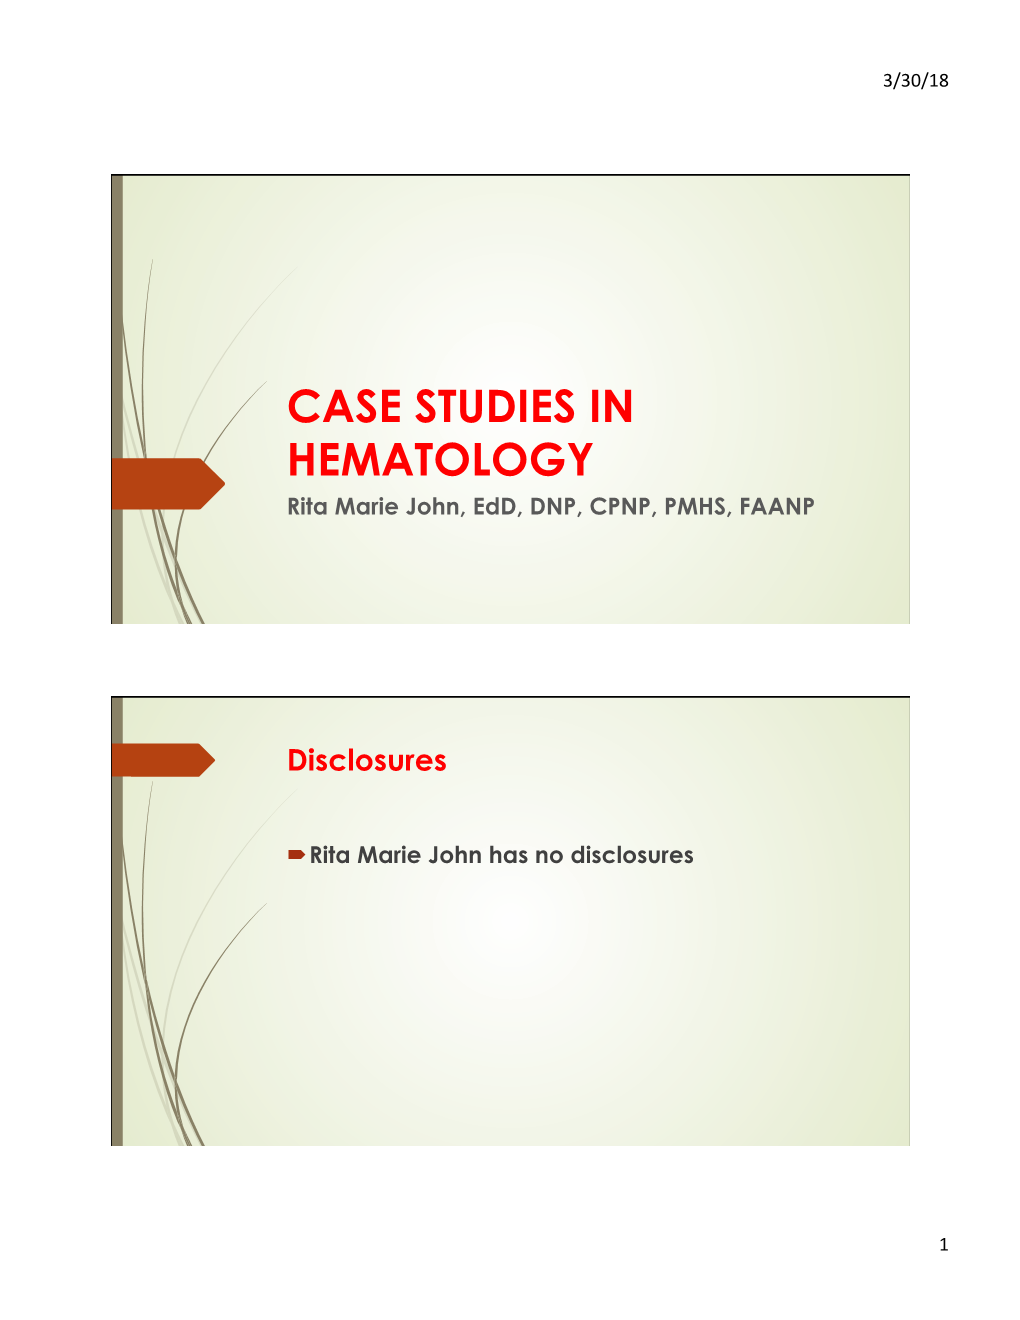 CASE STUDIES in HEMATOLOGY.Pptx